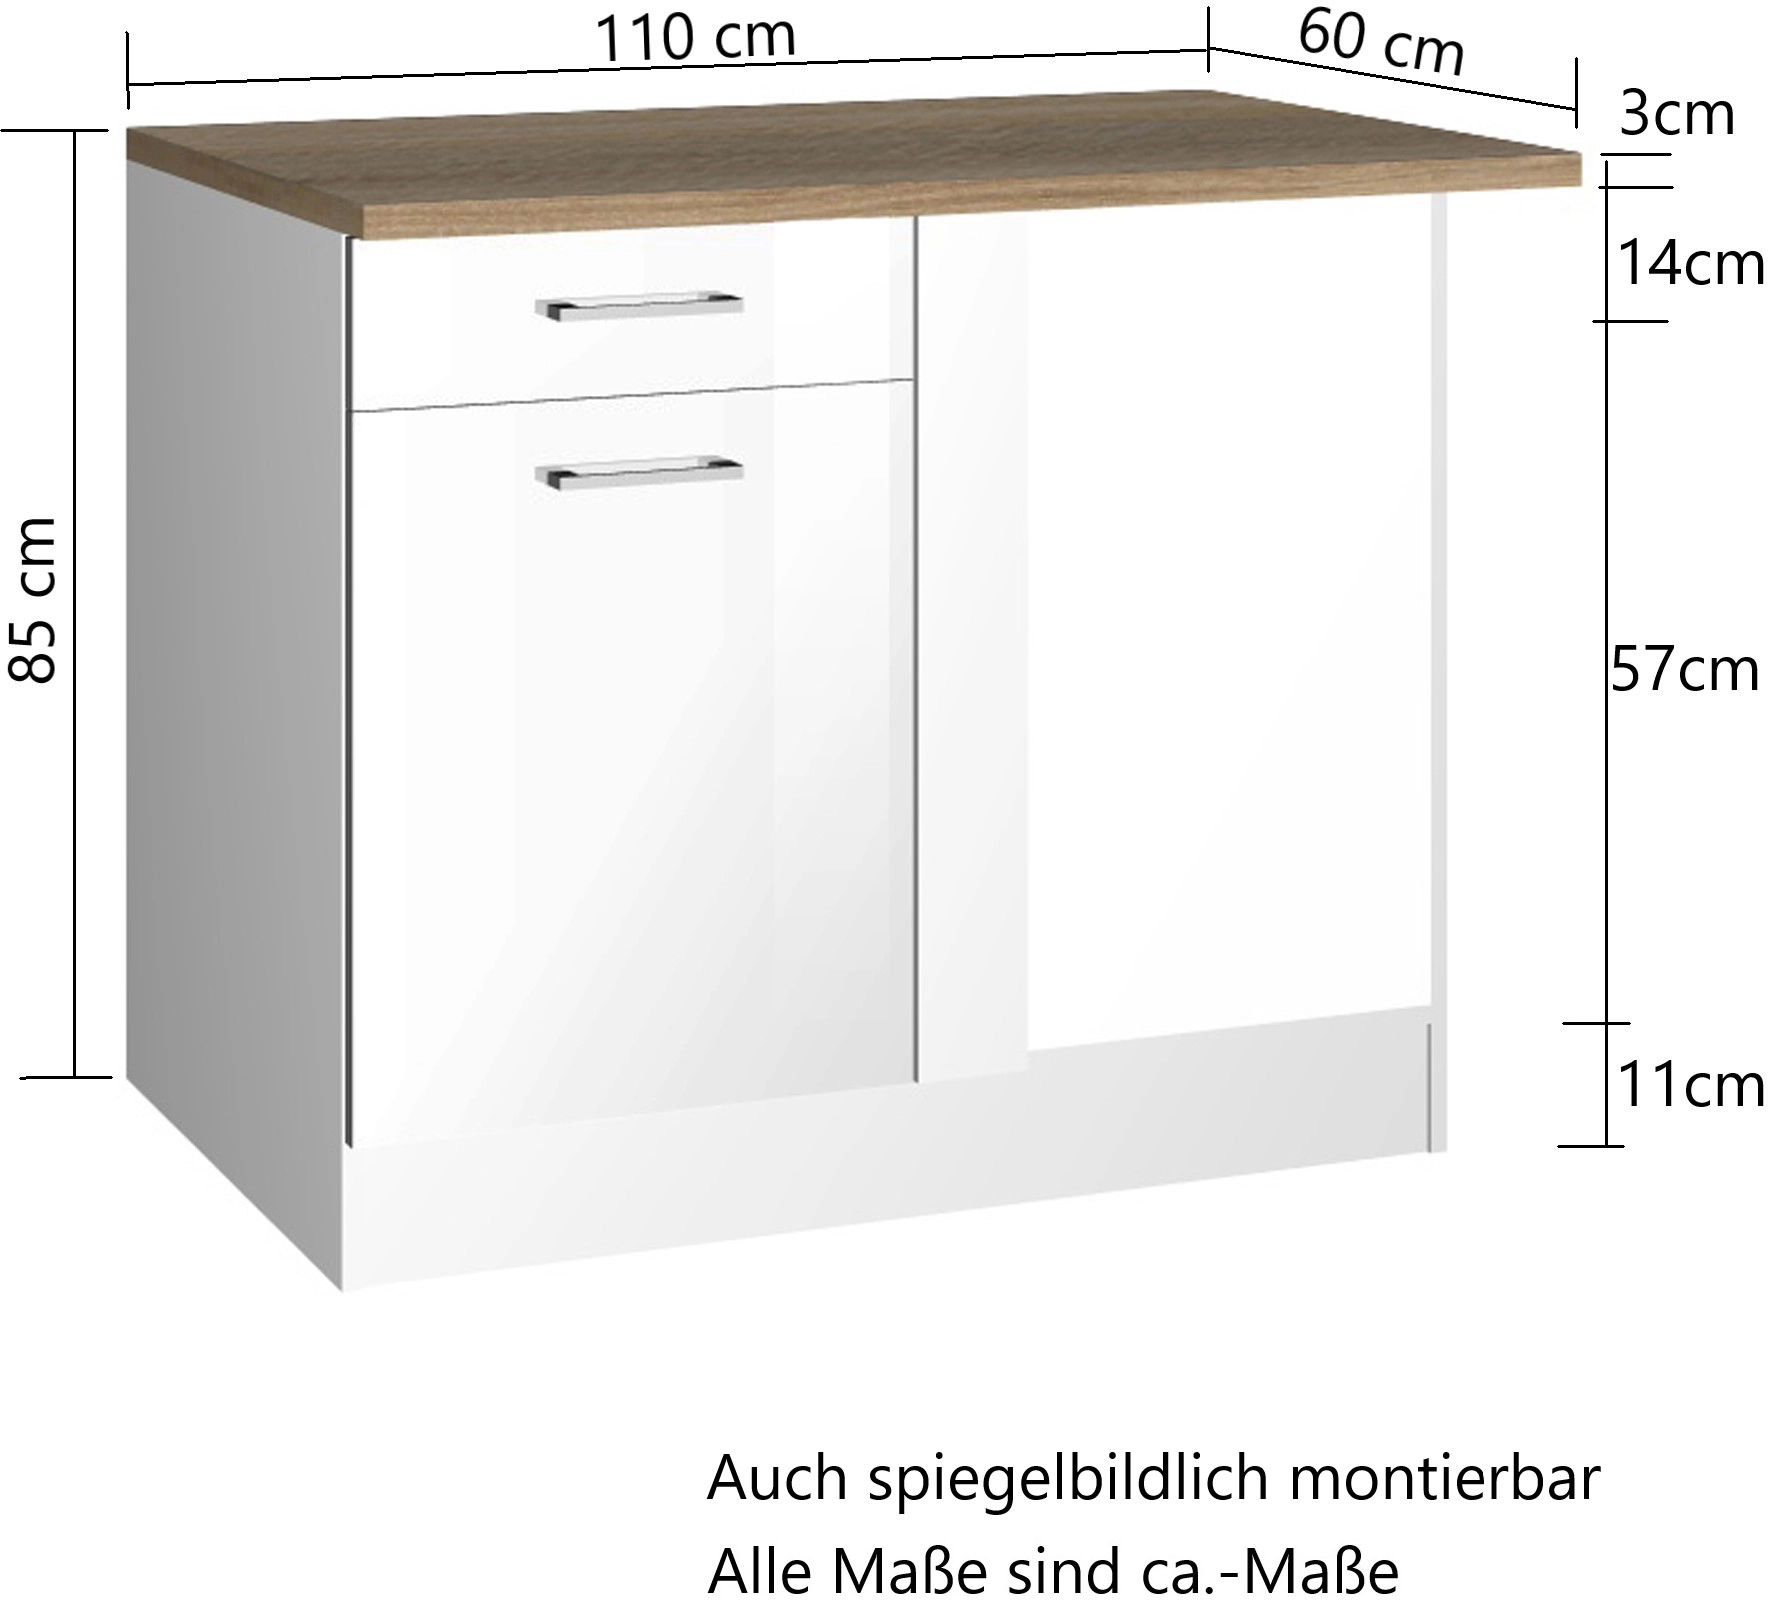 Held Möbel Küchen-Eckschrank Mailand 110 cm Hochglanz Graphit/Graphit  kaufen bei OBI